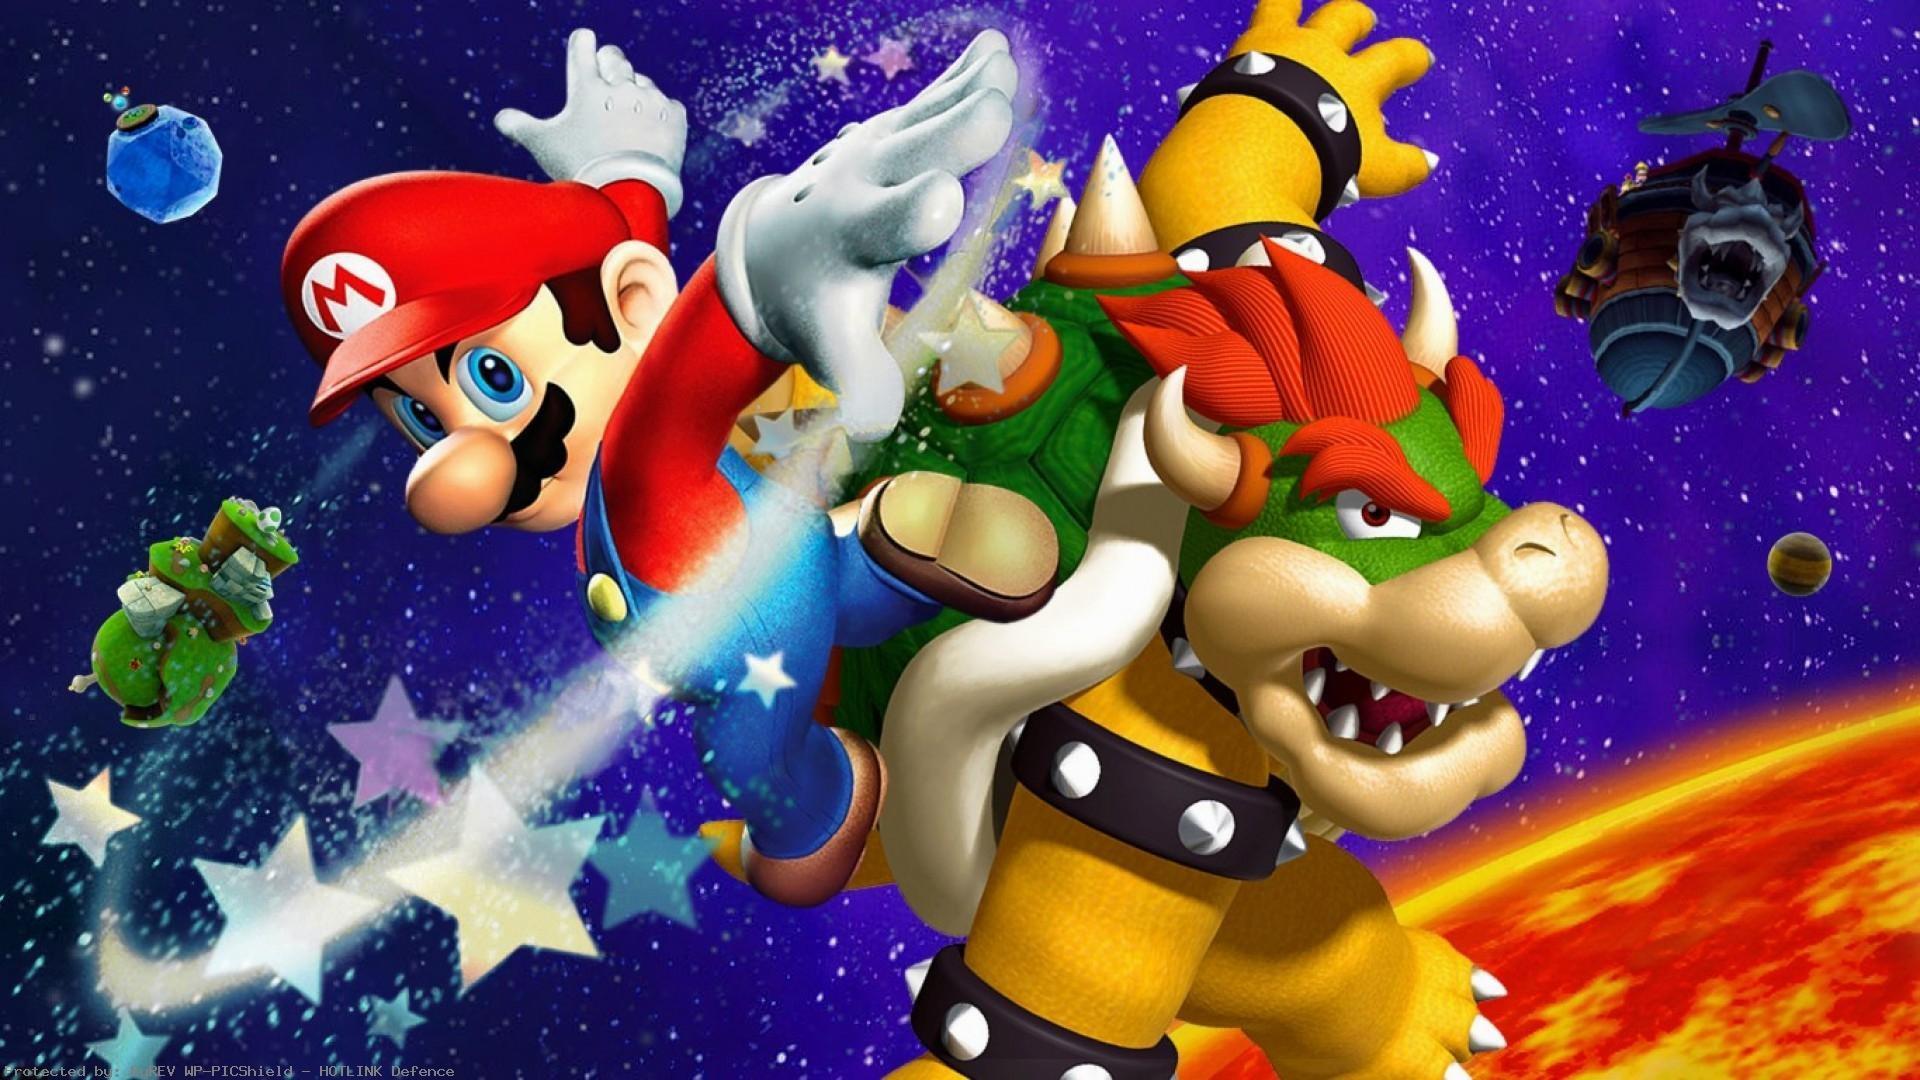 Super mario 5. Super Mario Galaxy 3. Bowser super Mario Galaxy 2. Super Mario Galaxy Bowser. Дракон Боузер из Марио.